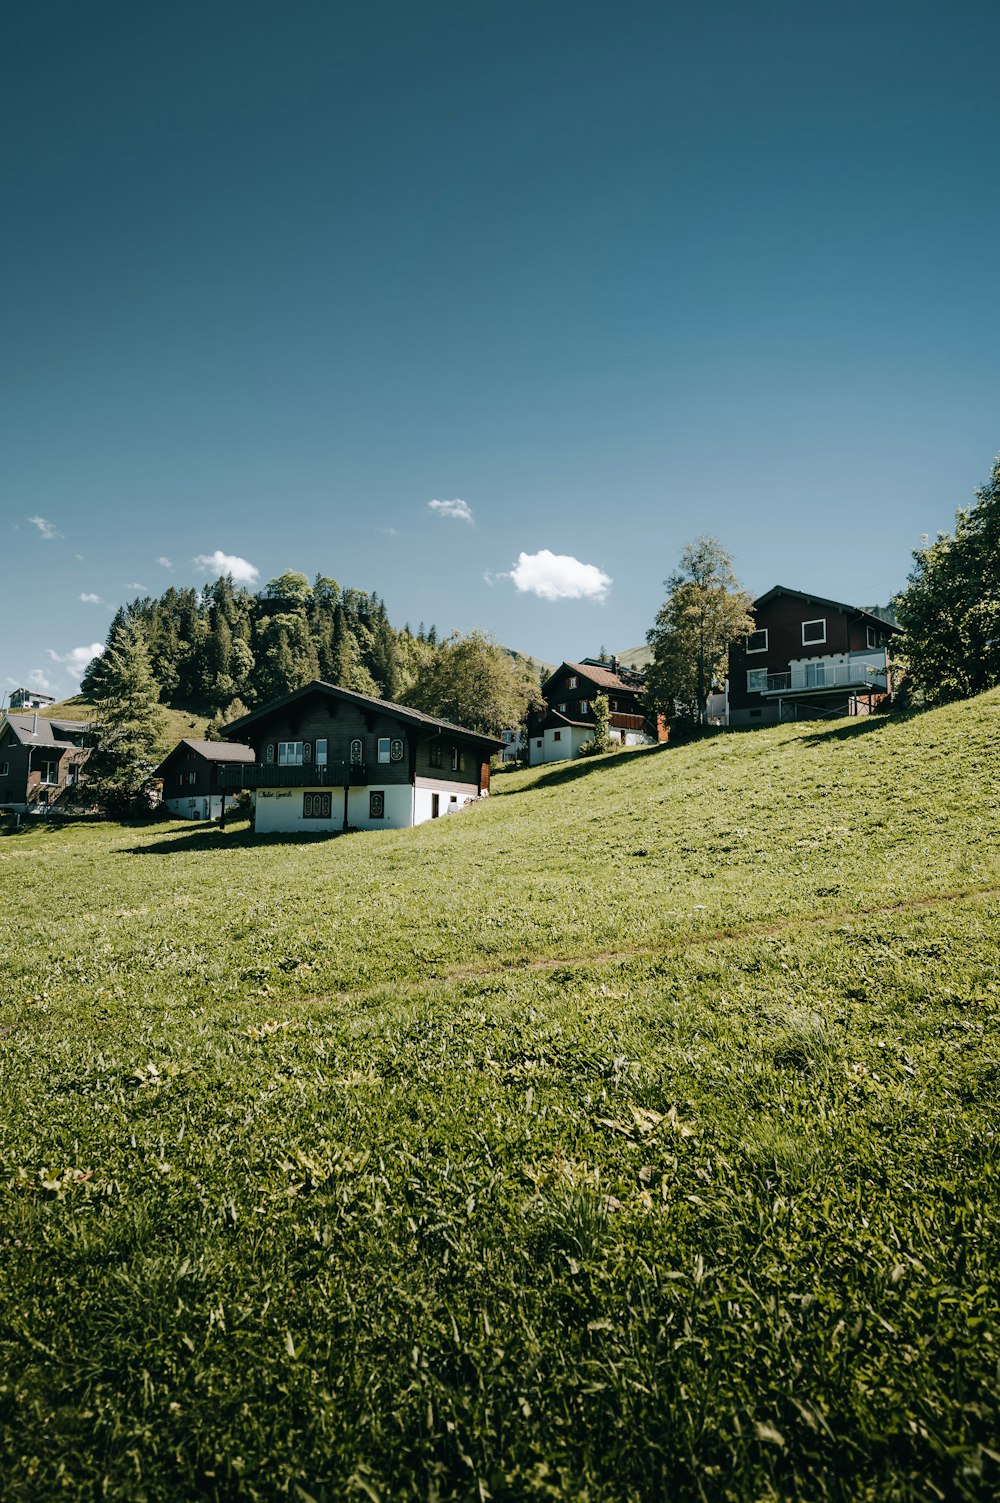 Menschen, die tagsüber auf einem grünen Grasfeld in der Nähe des weißen und schwarzen Hauses unter blauem Himmel spazieren gehen